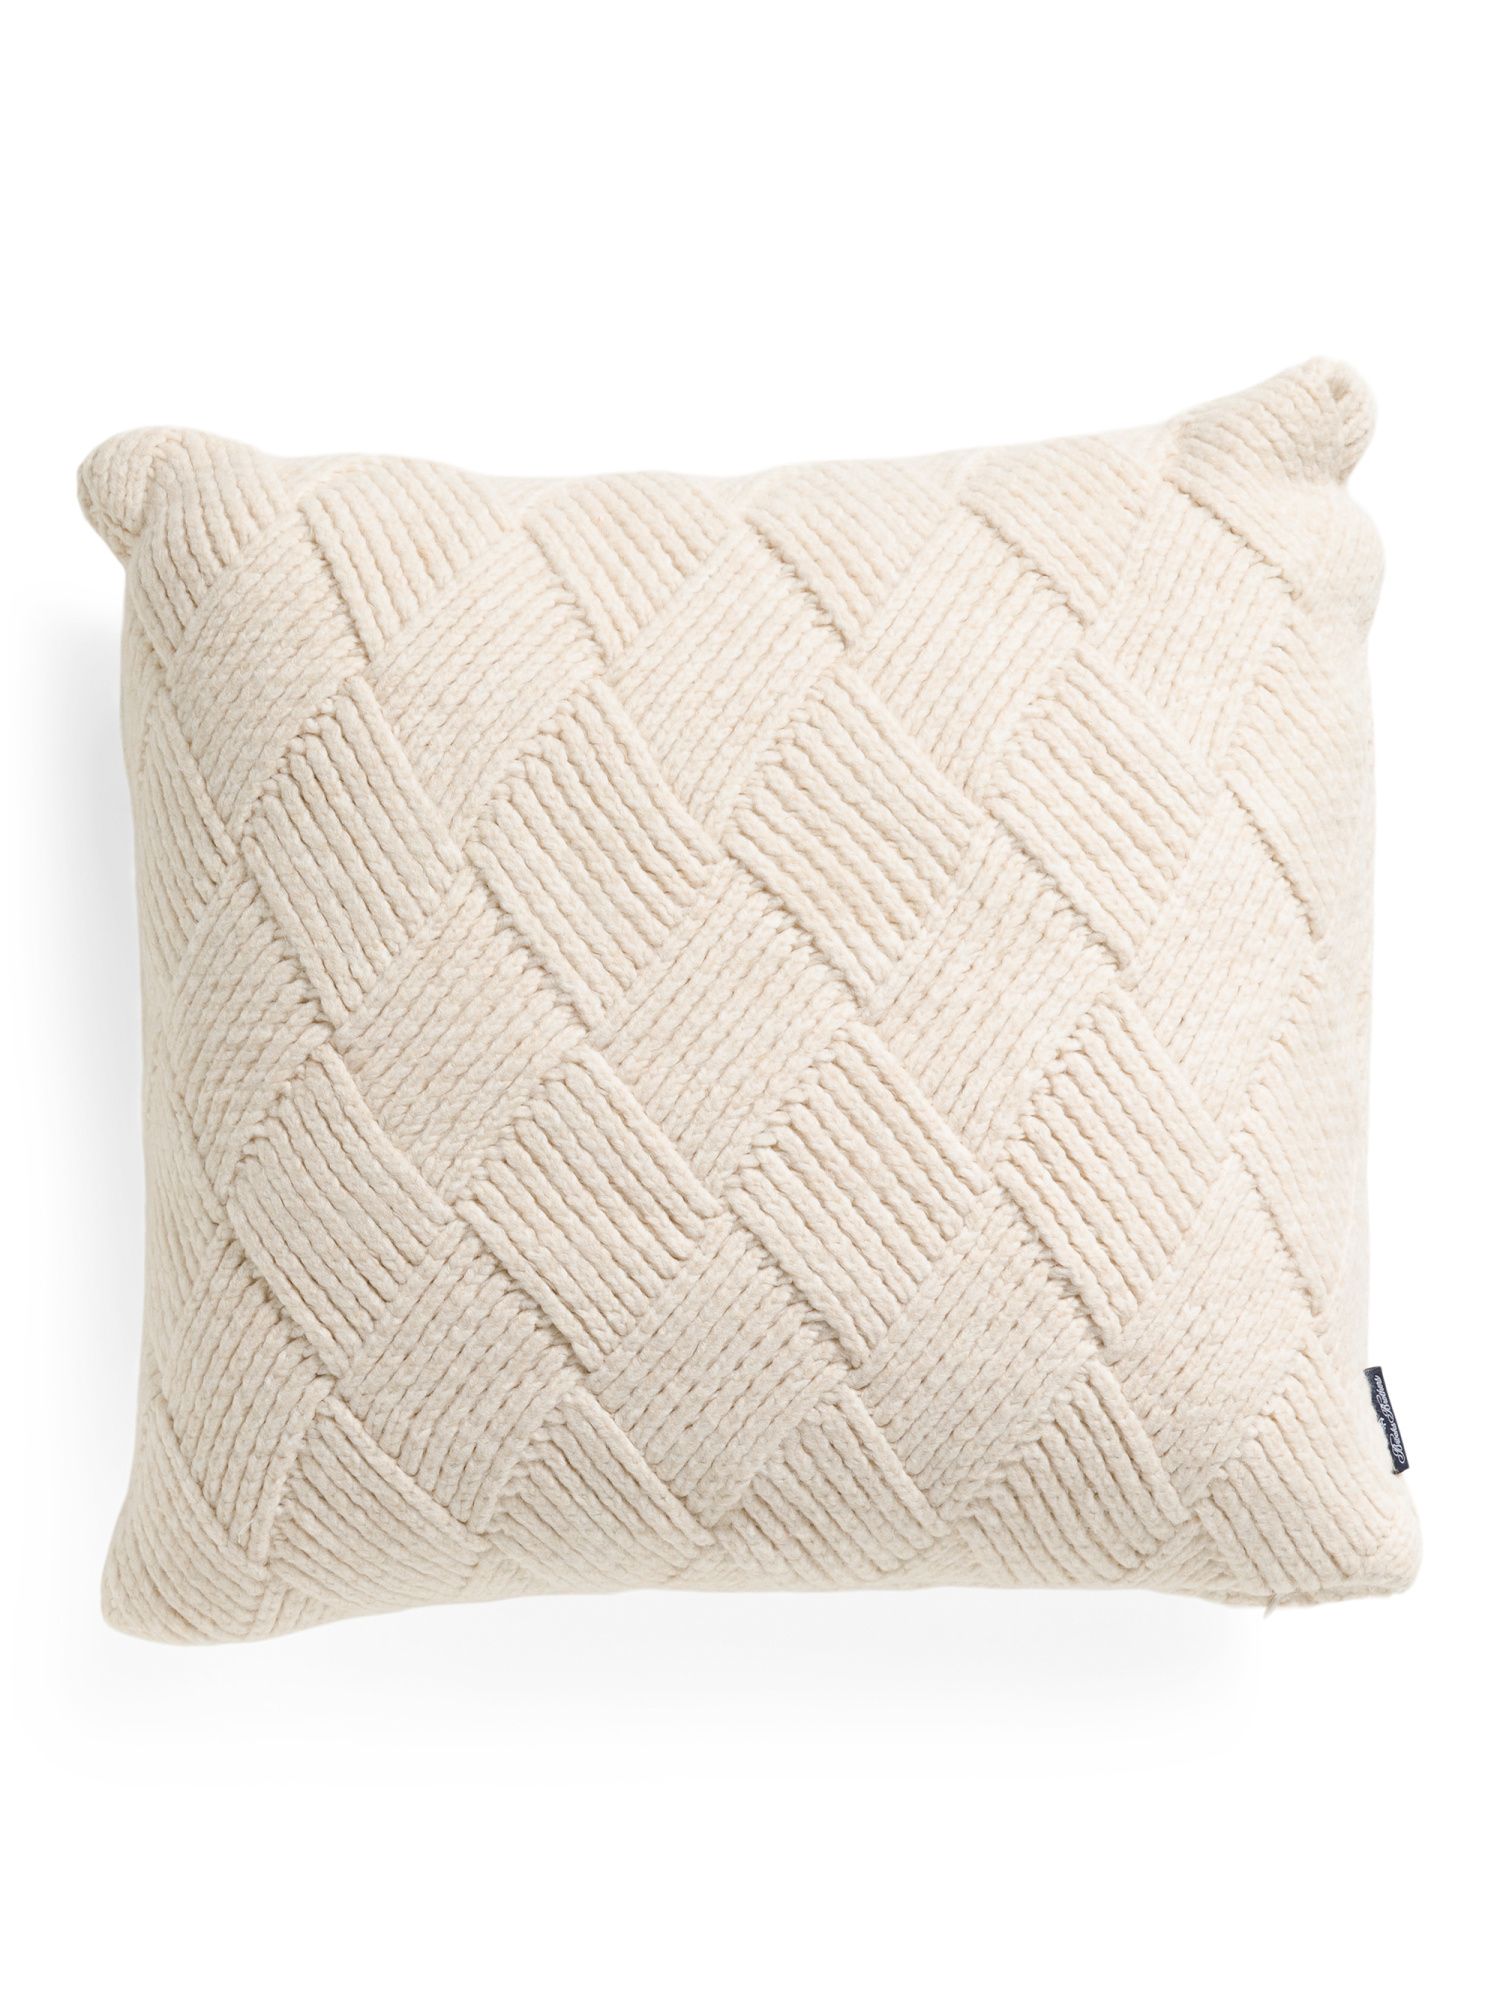 22x22 Braided Pillow | TJ Maxx